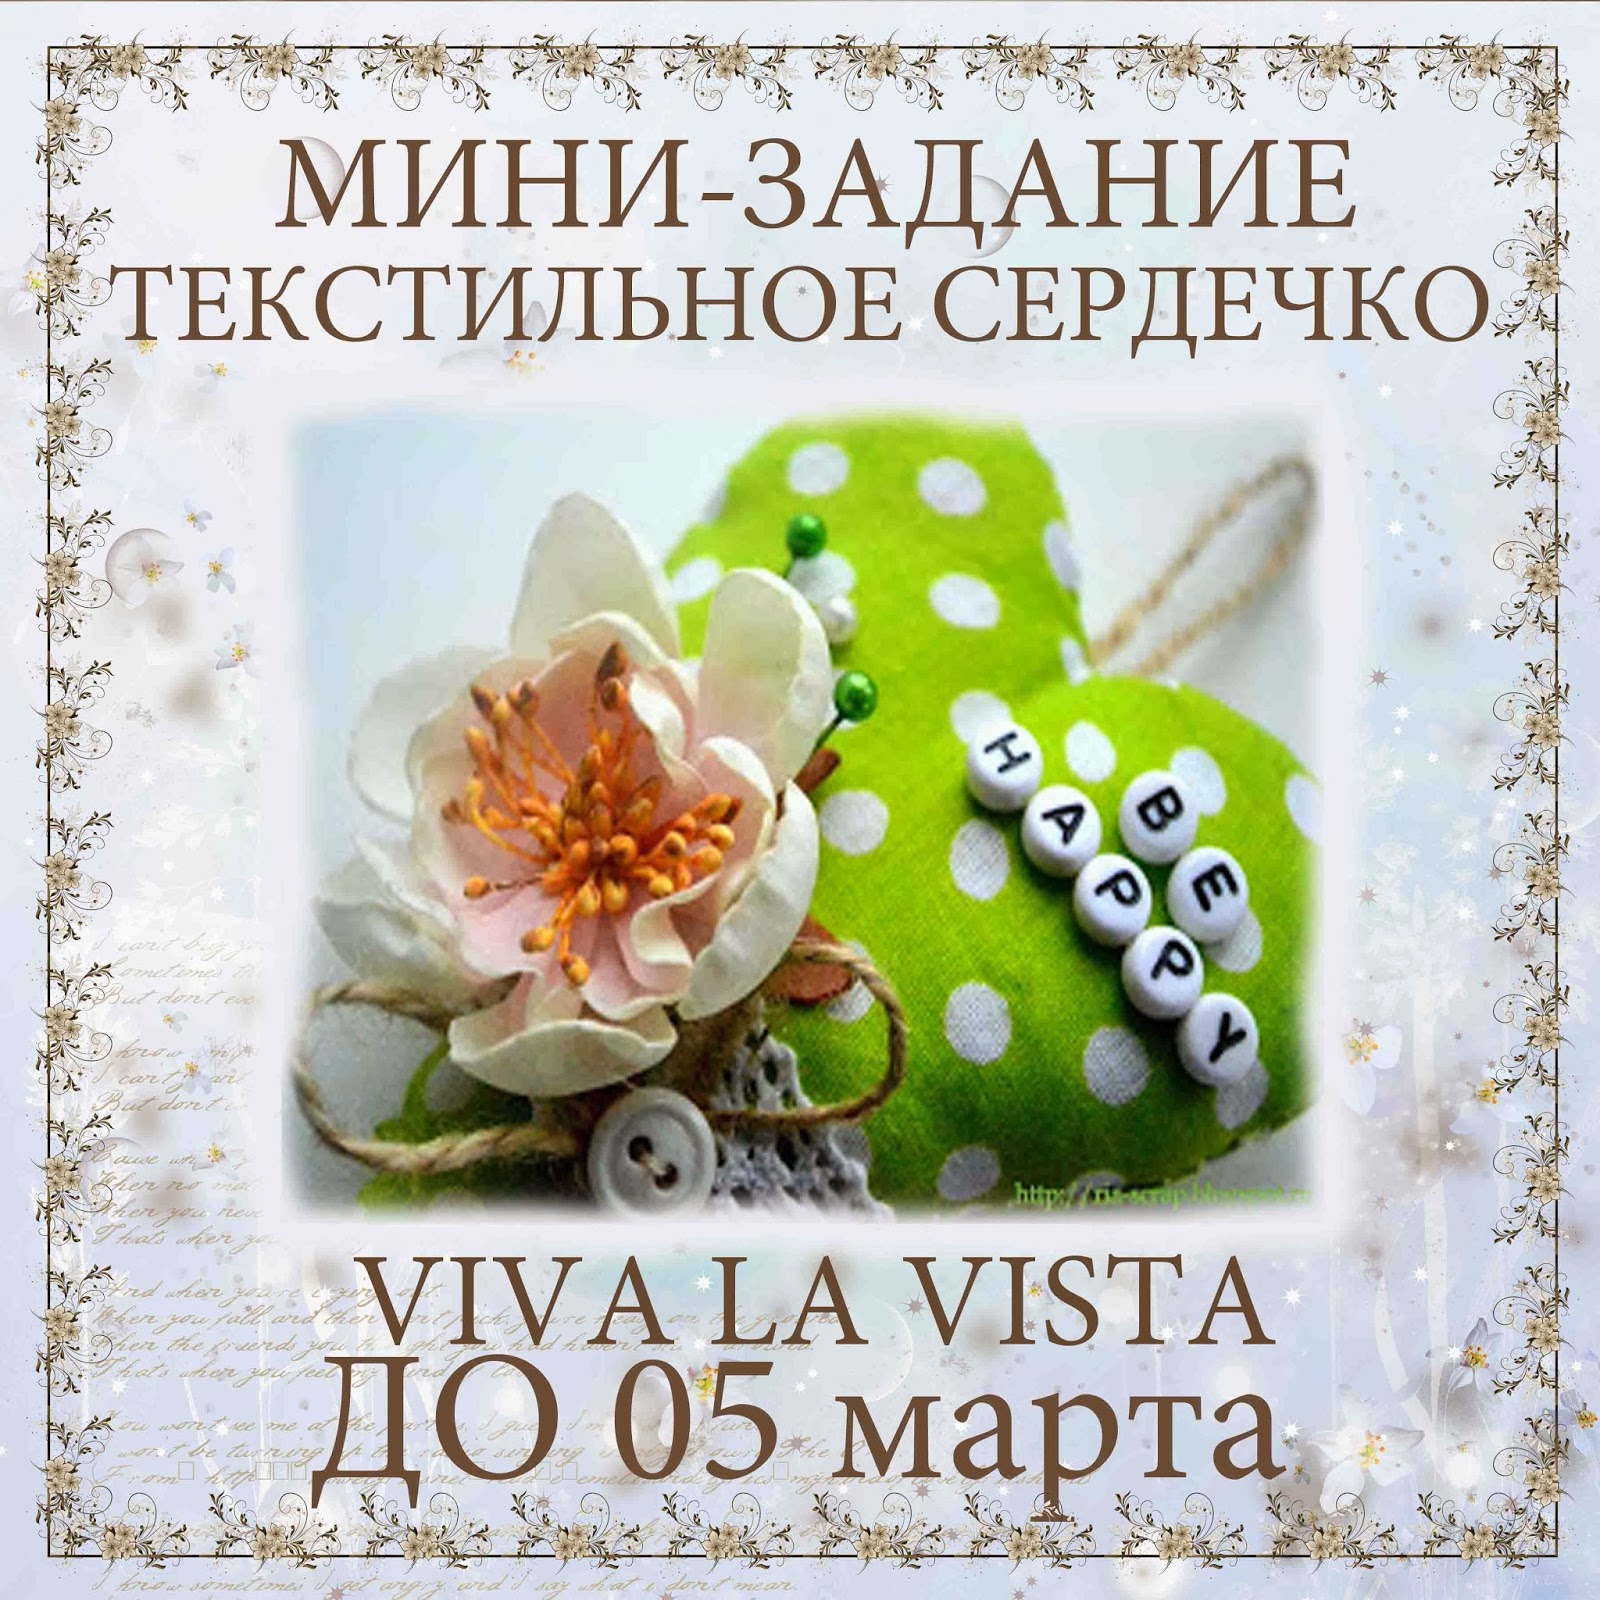 http://vlvista.blogspot.ru/2014/01/blog-post_14.html